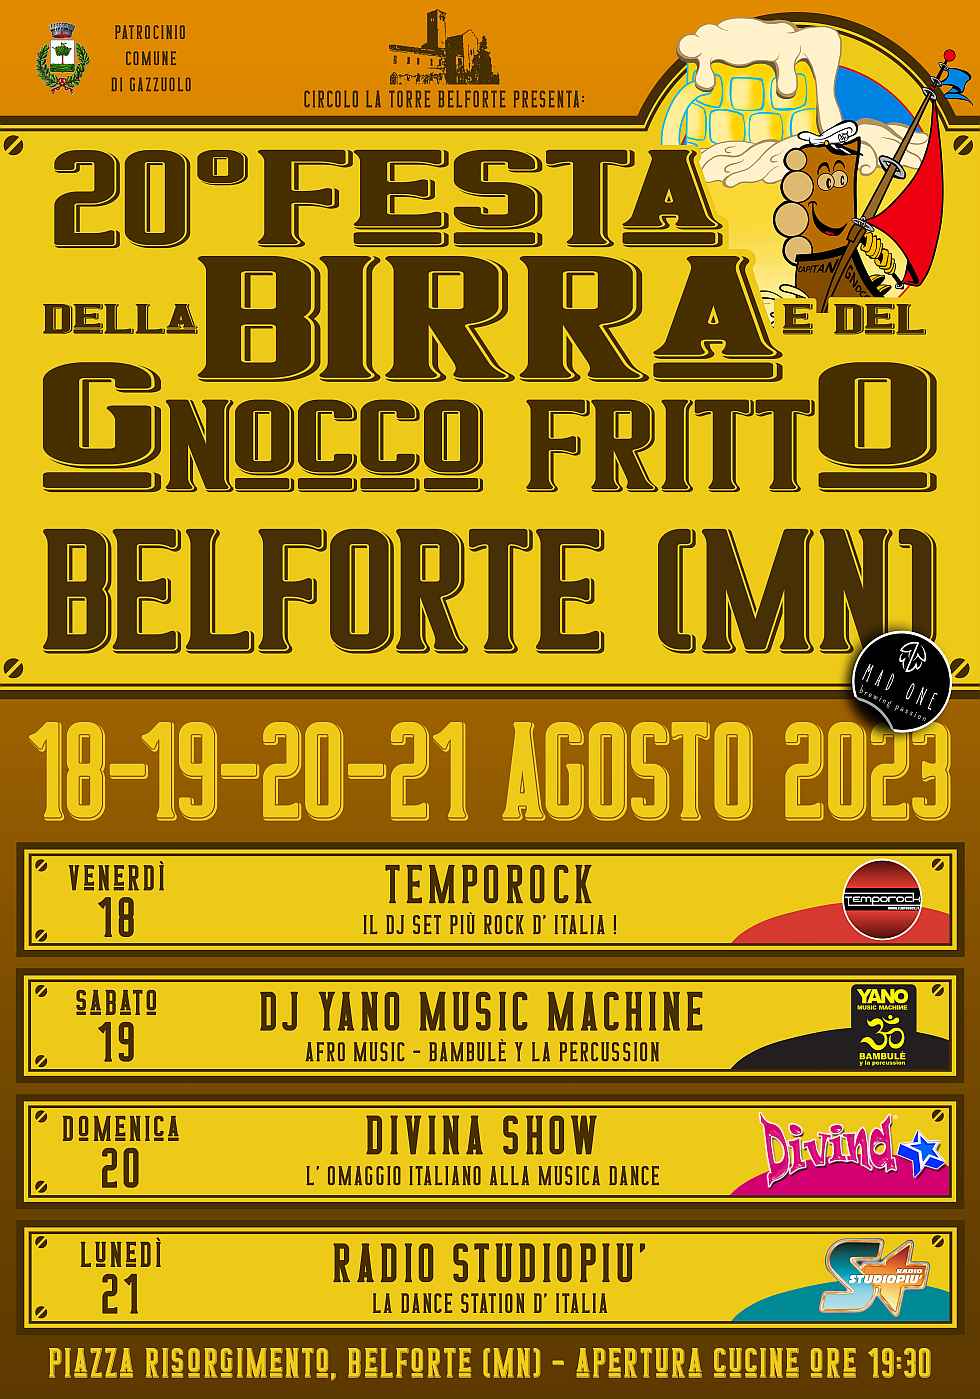 Belforte (MN)
"Festa della Birra edel Gnocco Fritto"
dal 19 al 22 Agosto 2022